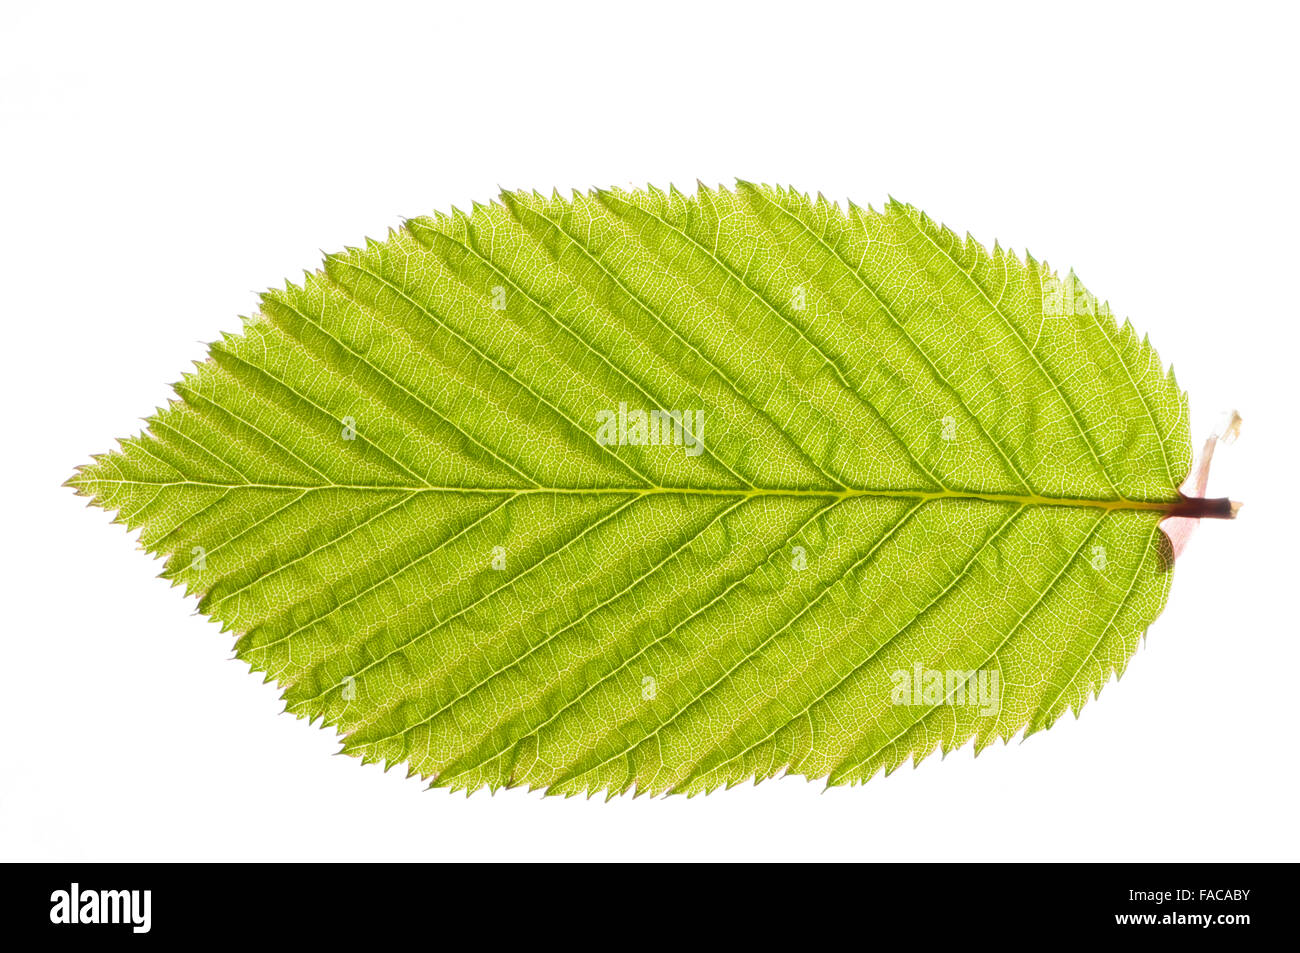 Schöne grüne Feder Blatt, vor einem weißen Hintergrund Stockfoto